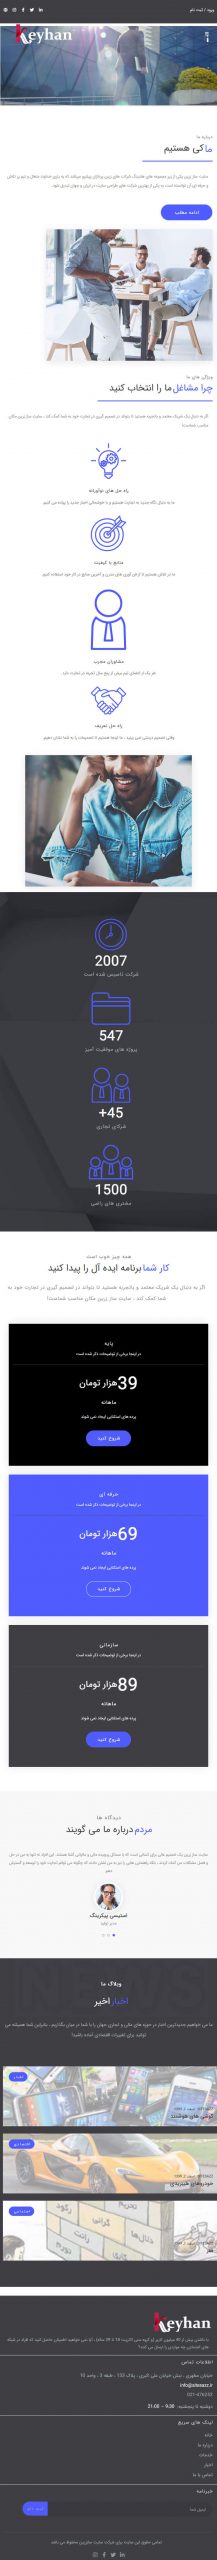 سایت کیهان در حالت تبلت